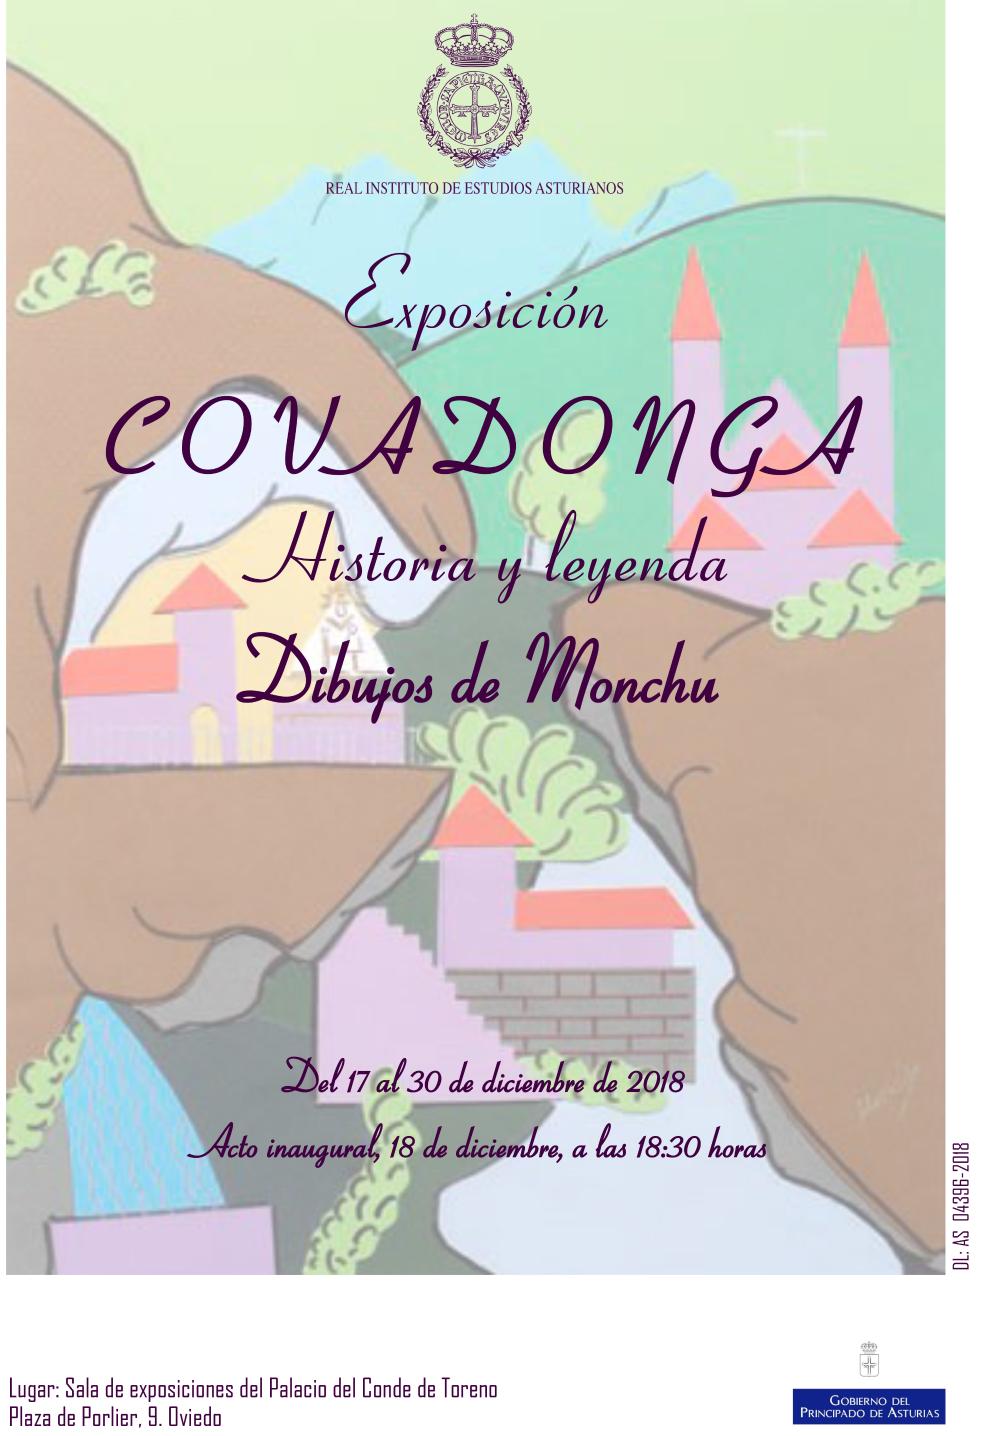 Imagen - Exposición COVADONGA. Historia y leyenda. Dibujos de Monchu